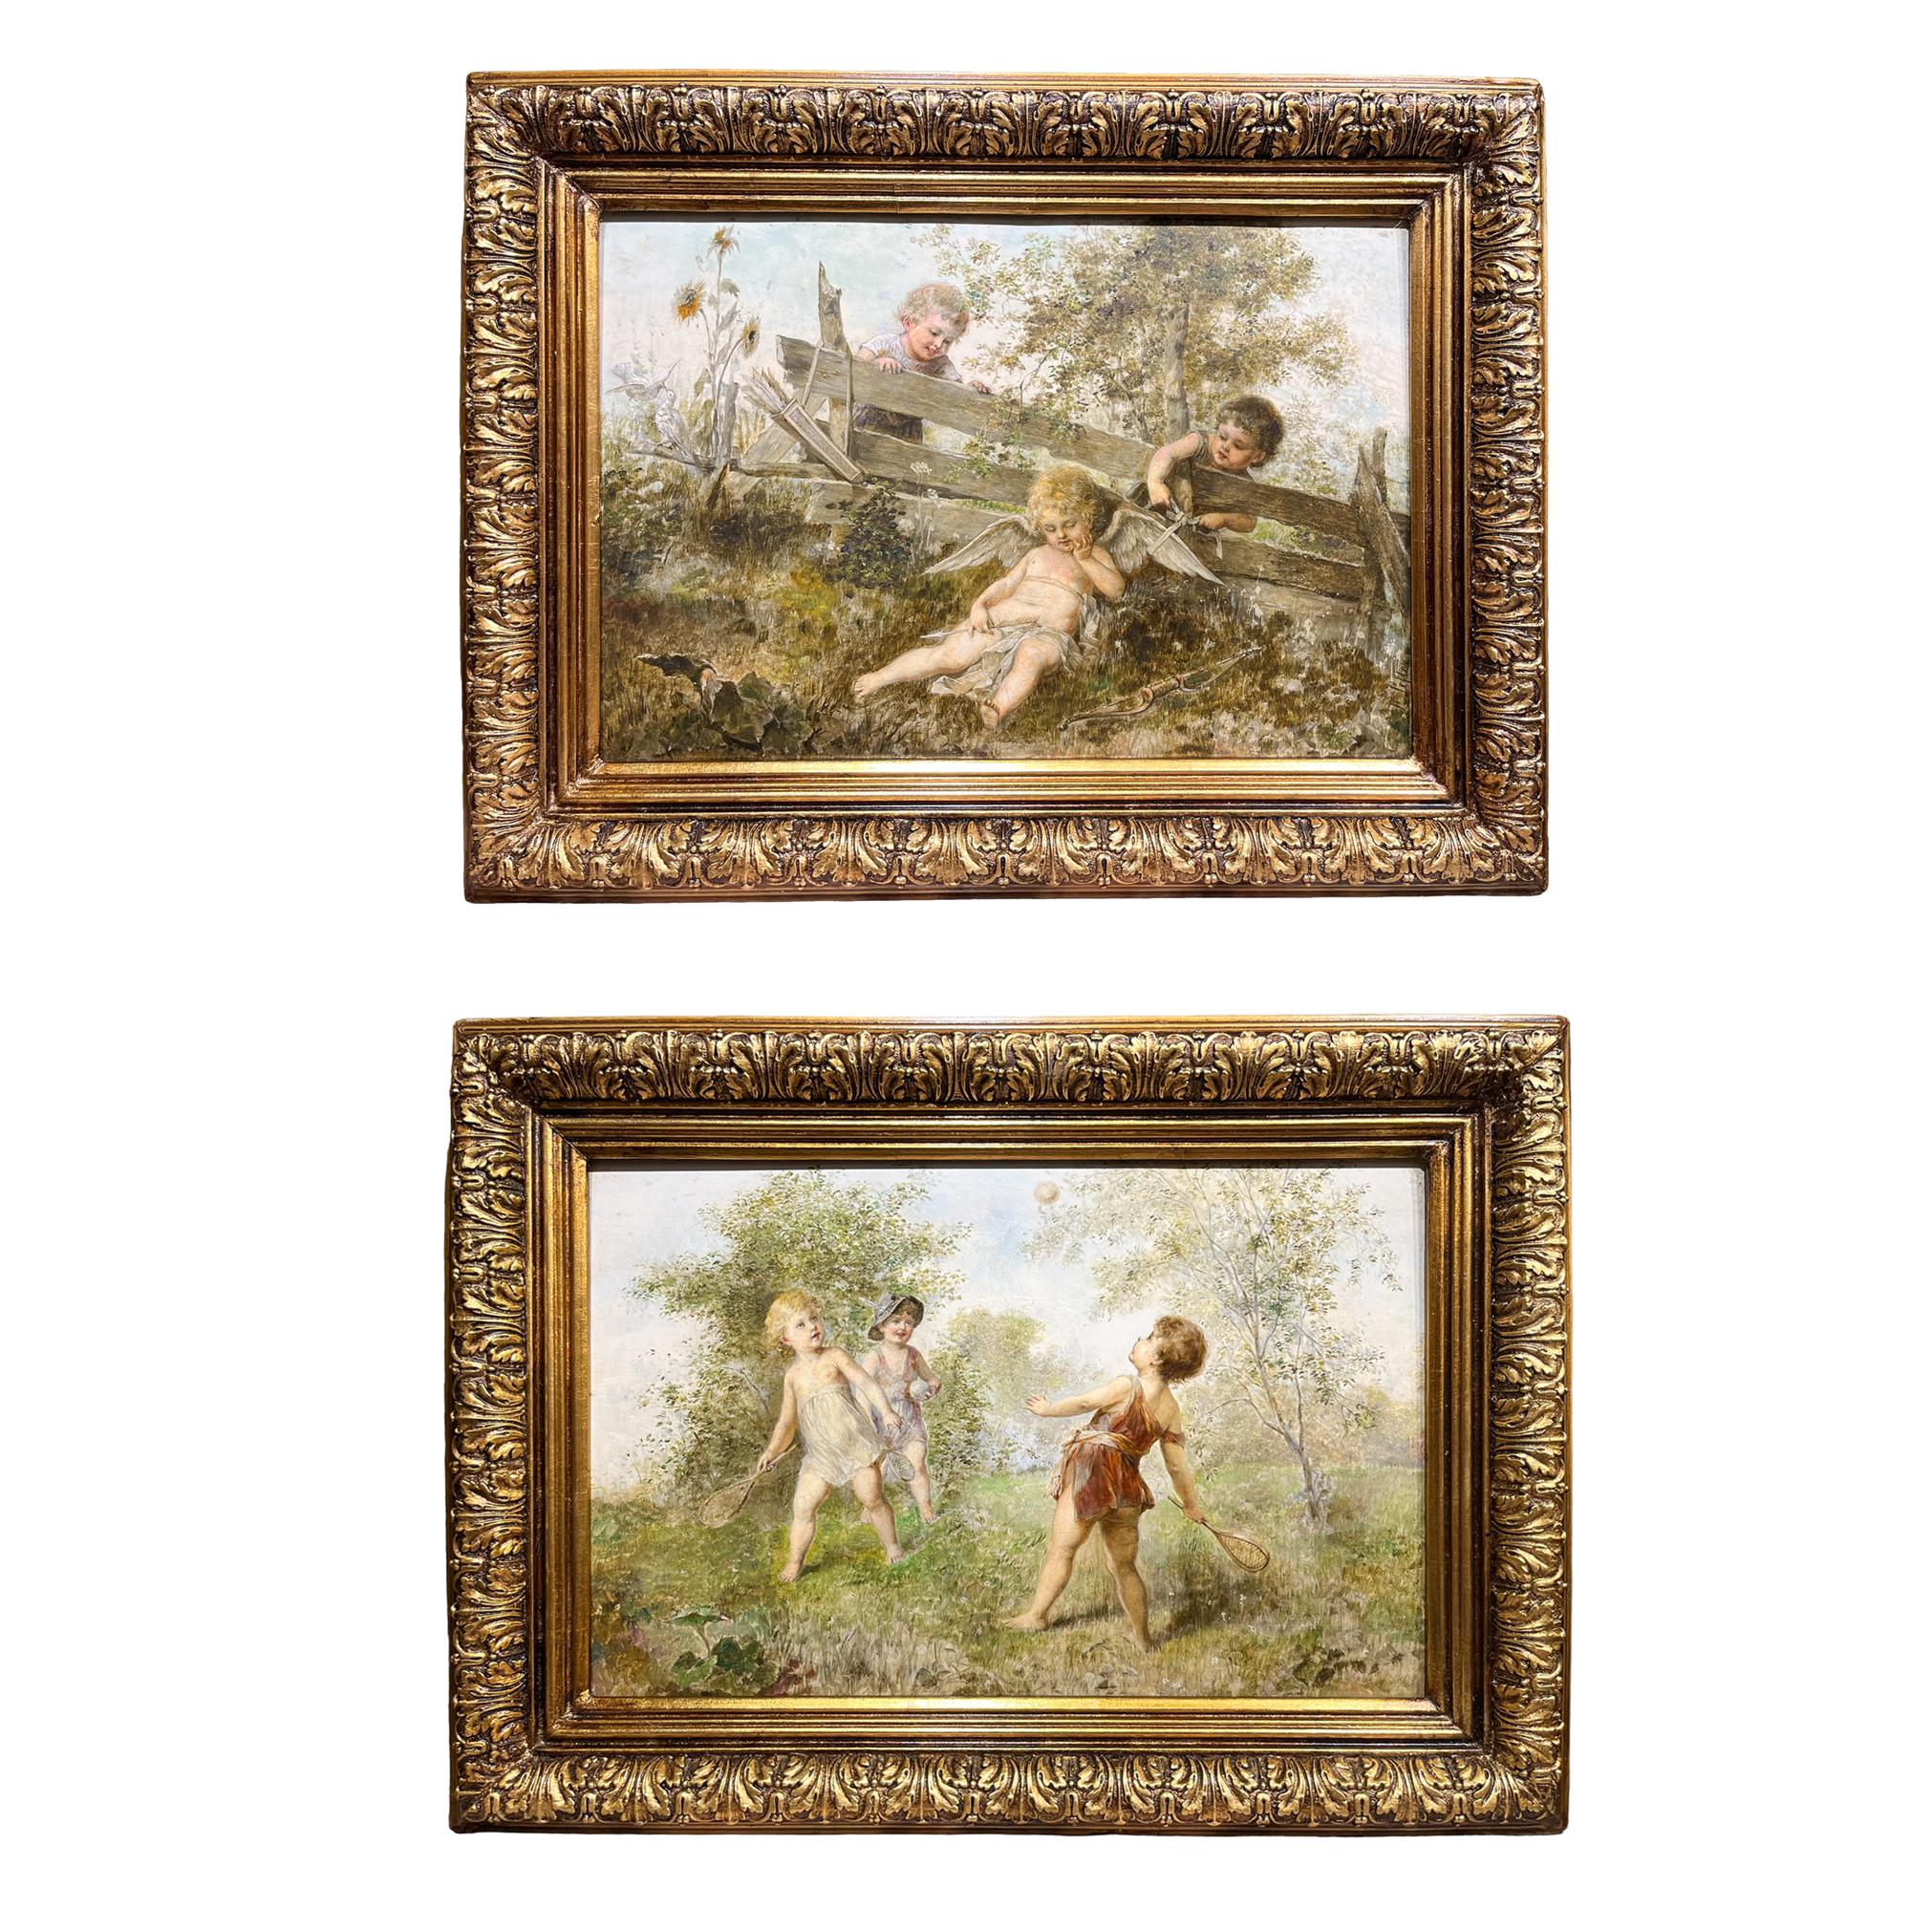 Amusante paire de peintures de Franz LEFLER (1831-1898) Tchèque

Les deux tableaux présentent des scènes de jeux d'enfants. La première met en scène deux enfants qui ont découvert par hasard un cupidon endormi dans la forêt. La seconde montre une